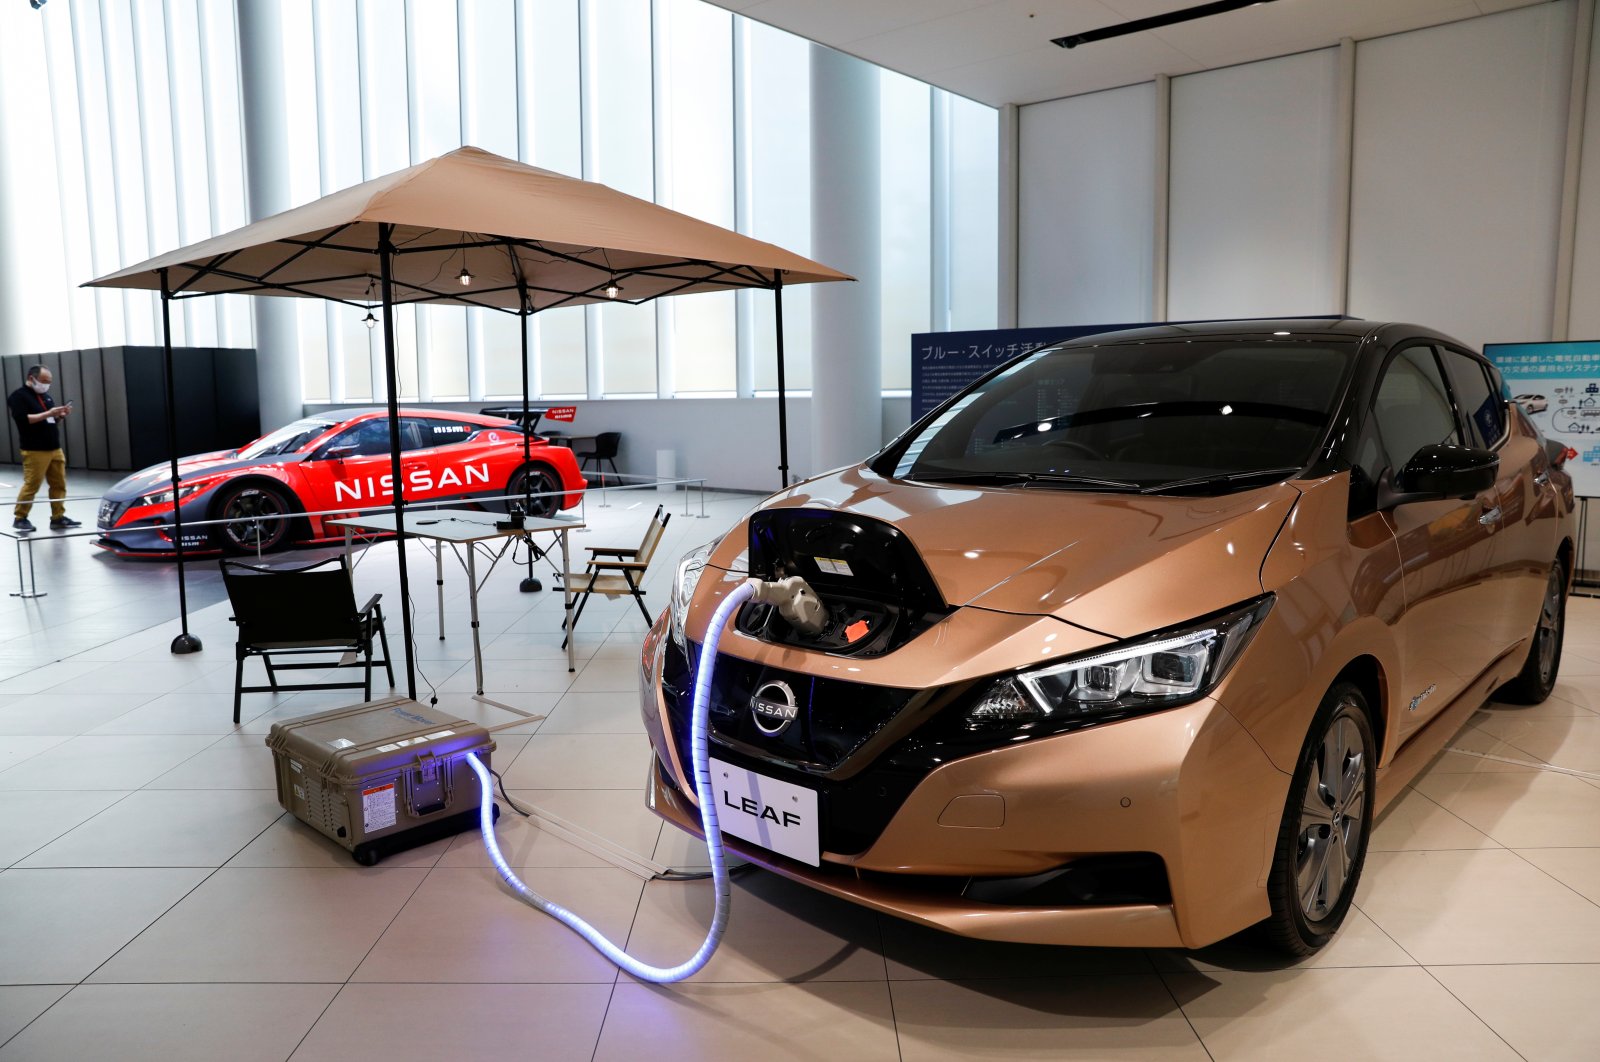 Nissan berkomitmen pengeluaran $ 17,6 miliar untuk mobil listrik selama 5 tahun